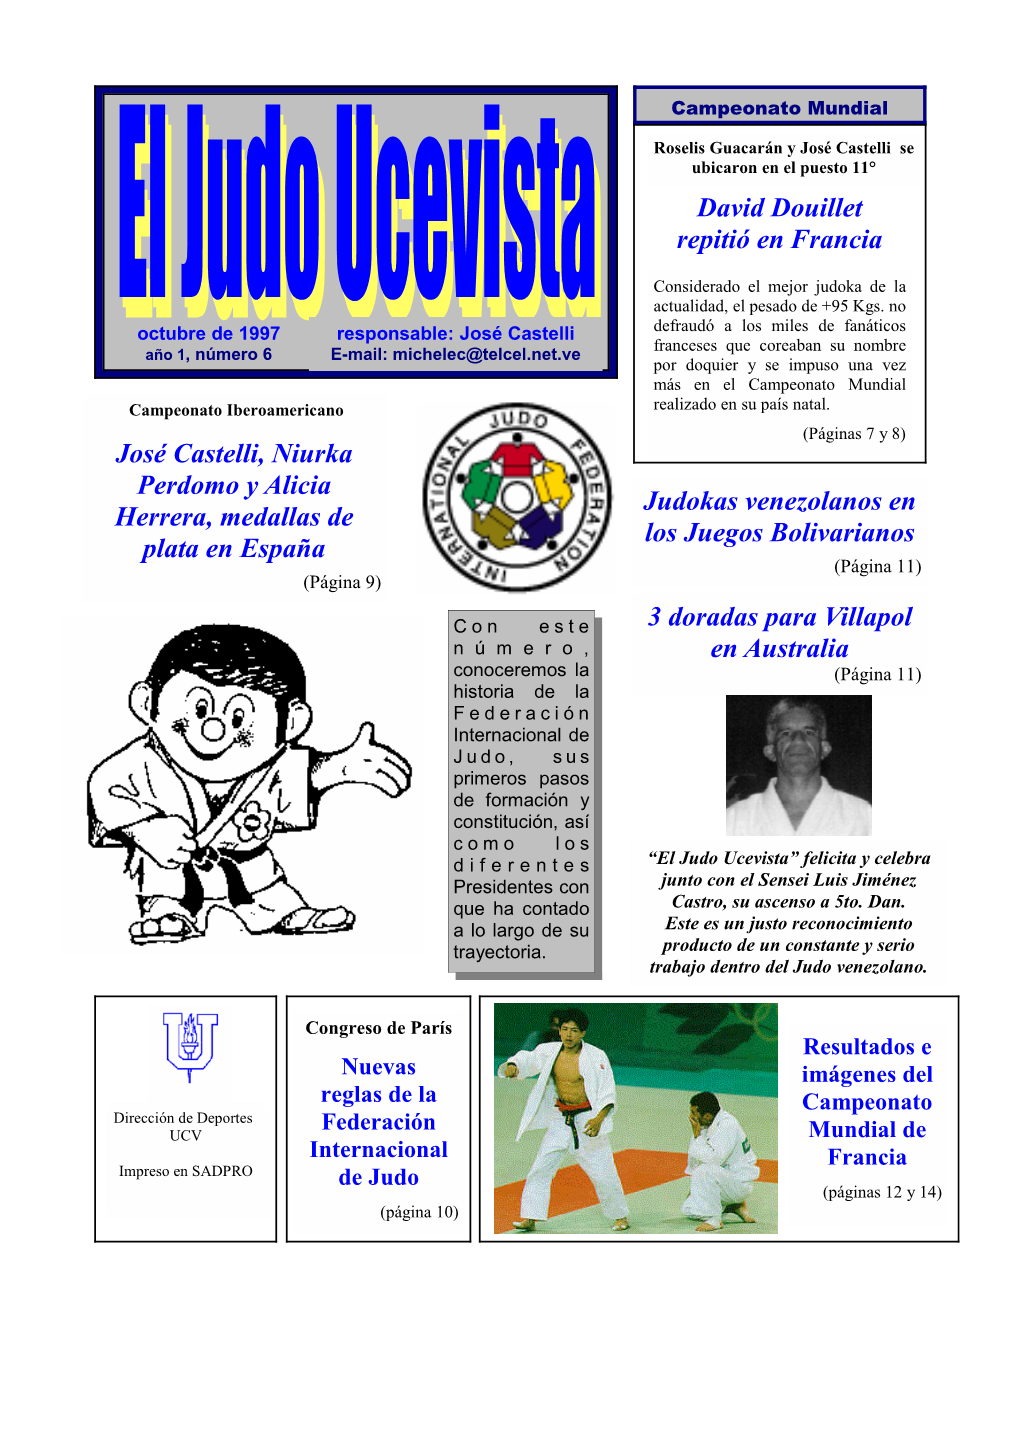 David Douillet Repitió En Francia Judokas Venezolanos En Los